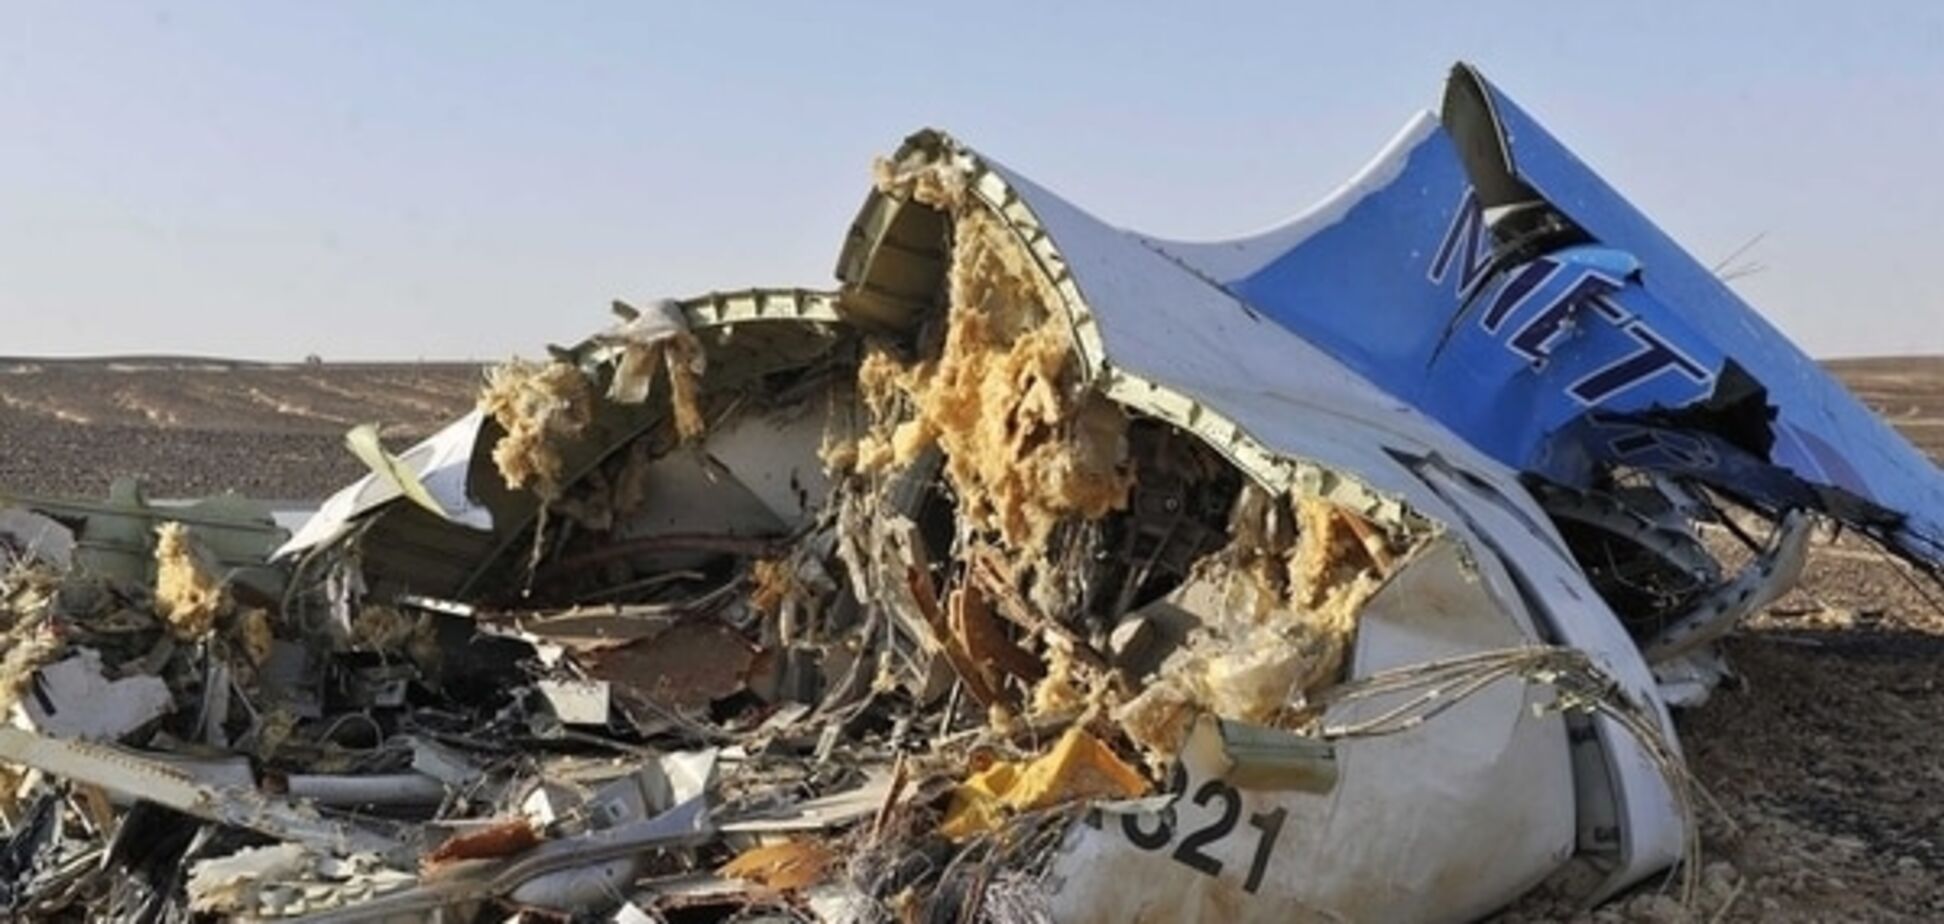 Бомбу пронесли співробітники аеропорту: ЗМІ розповіли подробиці теракту на A321